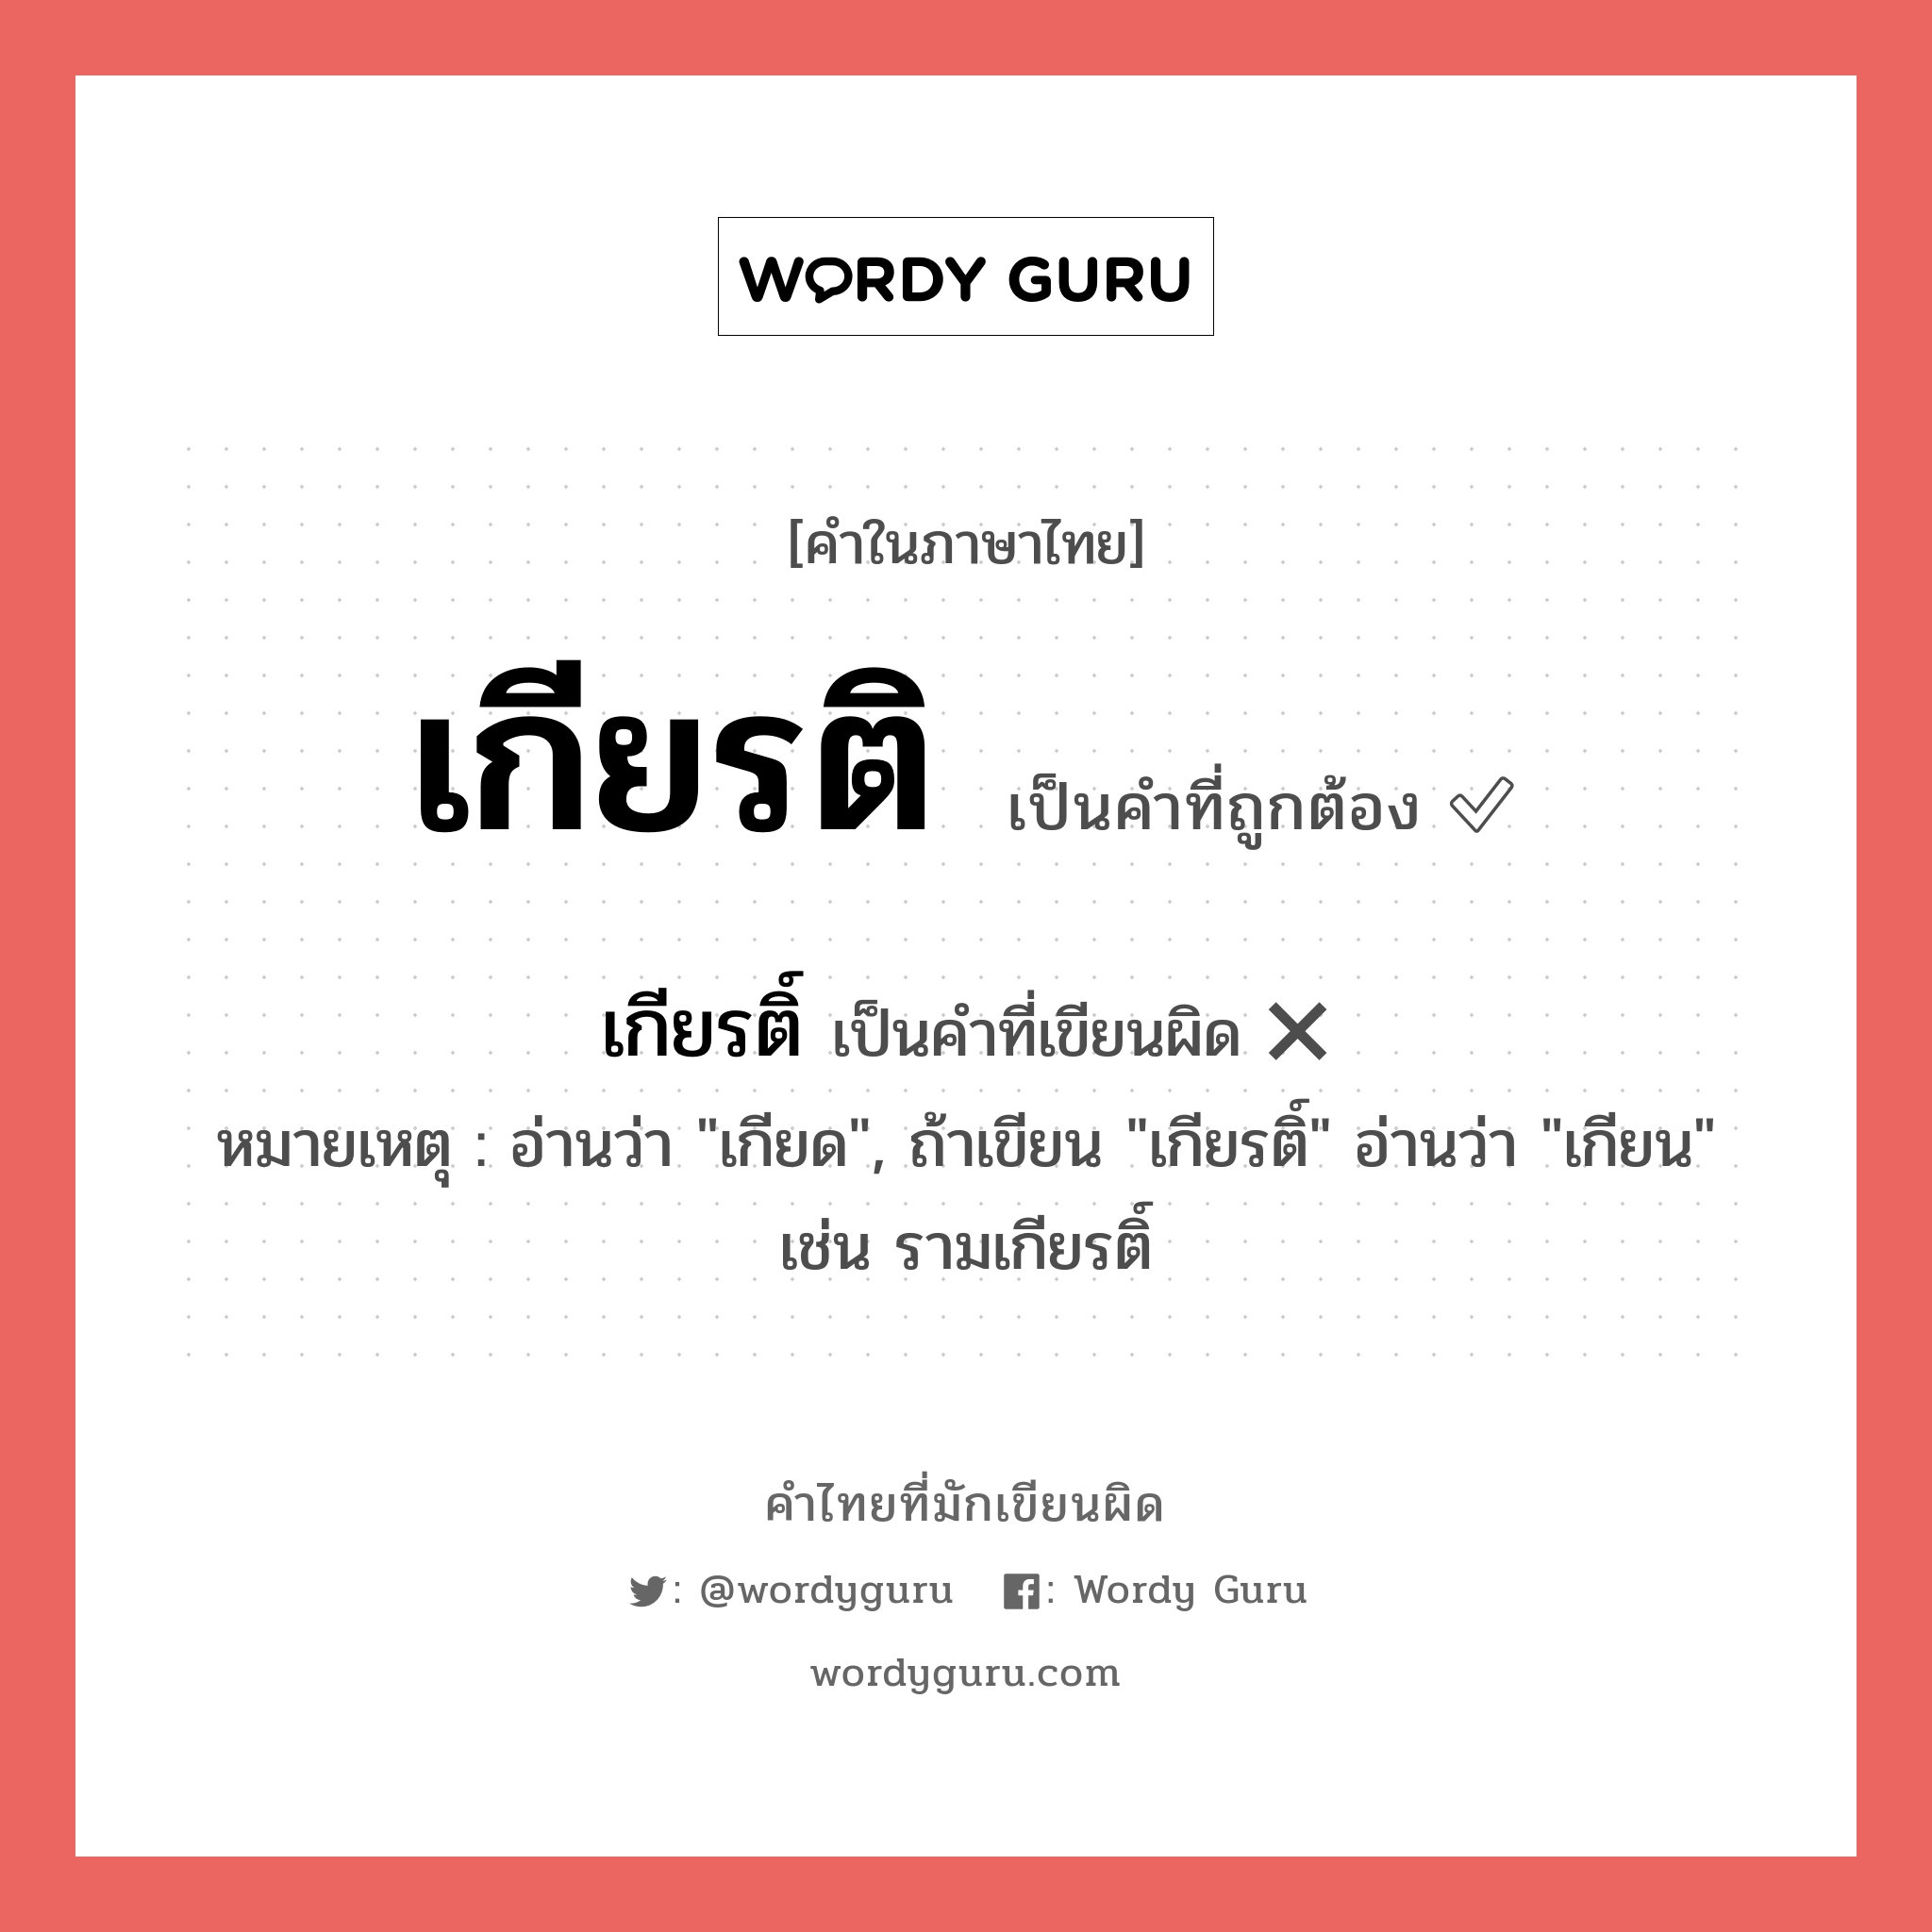 เกียรติ หรือ เกียรติ์ คำไหนเขียนถูก?, คำในภาษาไทยที่มักเขียนผิด เกียรติ คำที่ผิด ❌ เกียรติ์ หมายเหตุ อ่านว่า "เกียด", ถ้าเขียน "เกียรติ์" อ่านว่า "เกียน" เช่น รามเกียรติ์